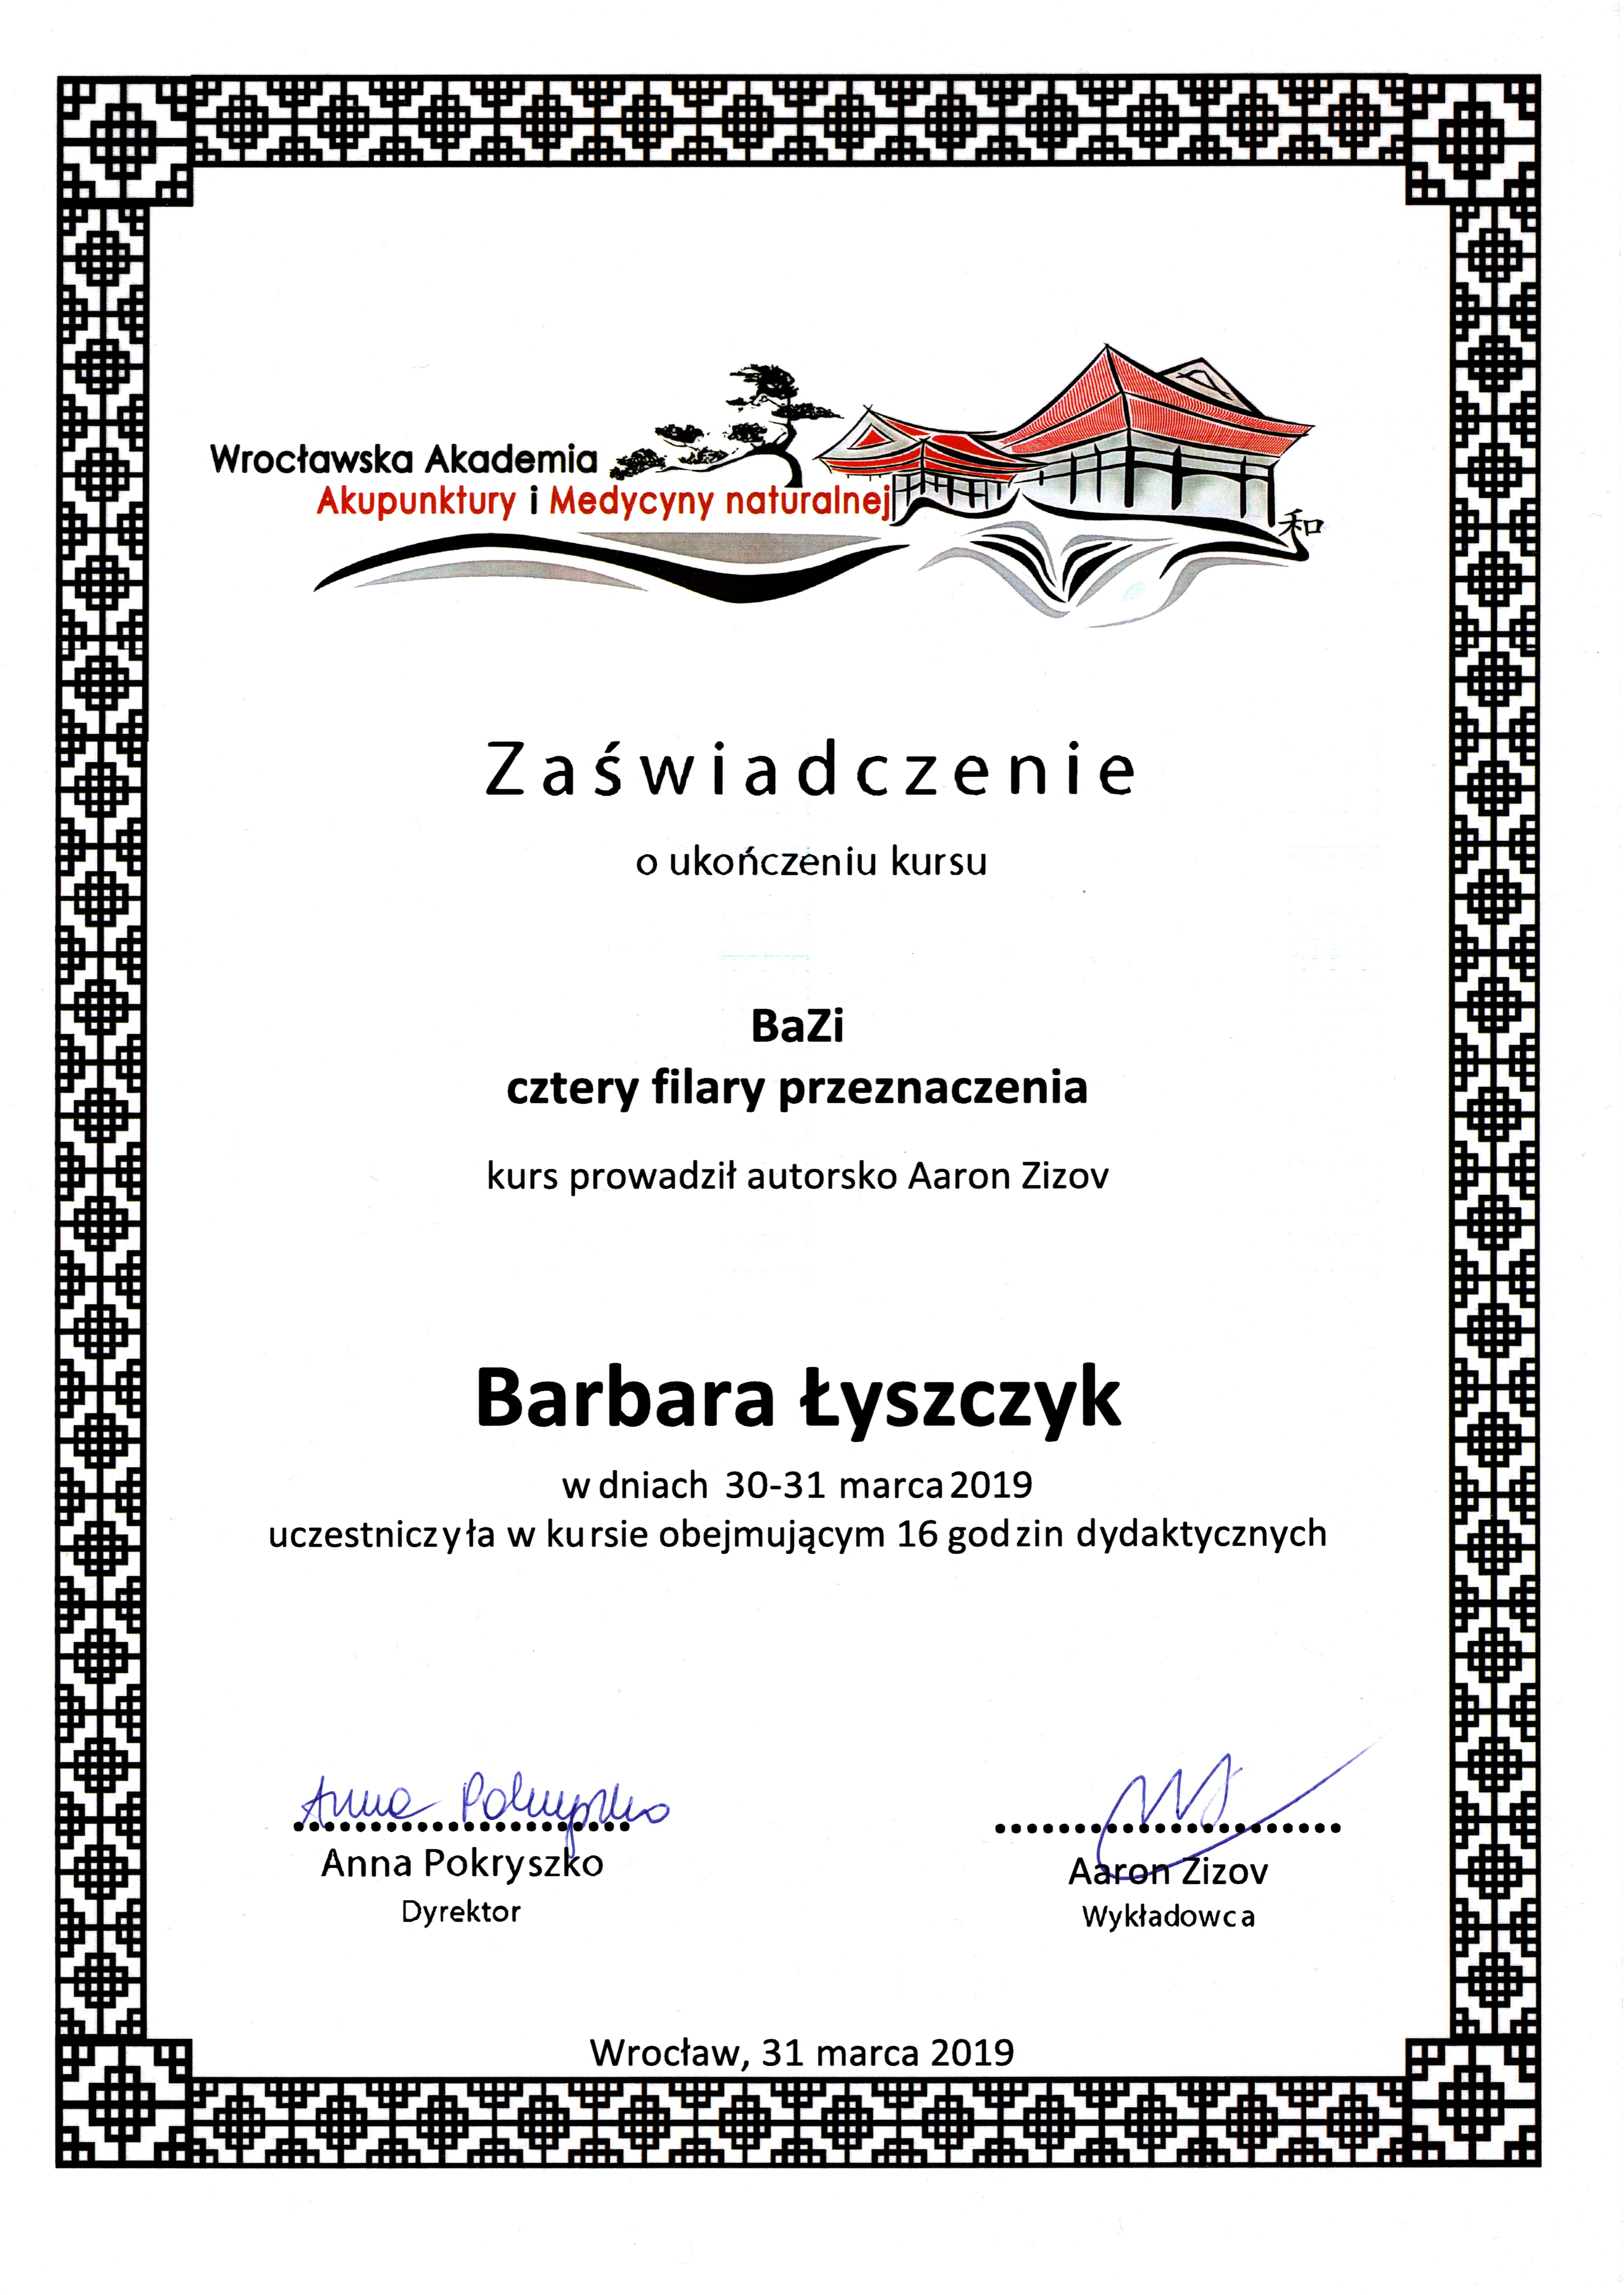 Certyfikat Zizov (BA ZI)